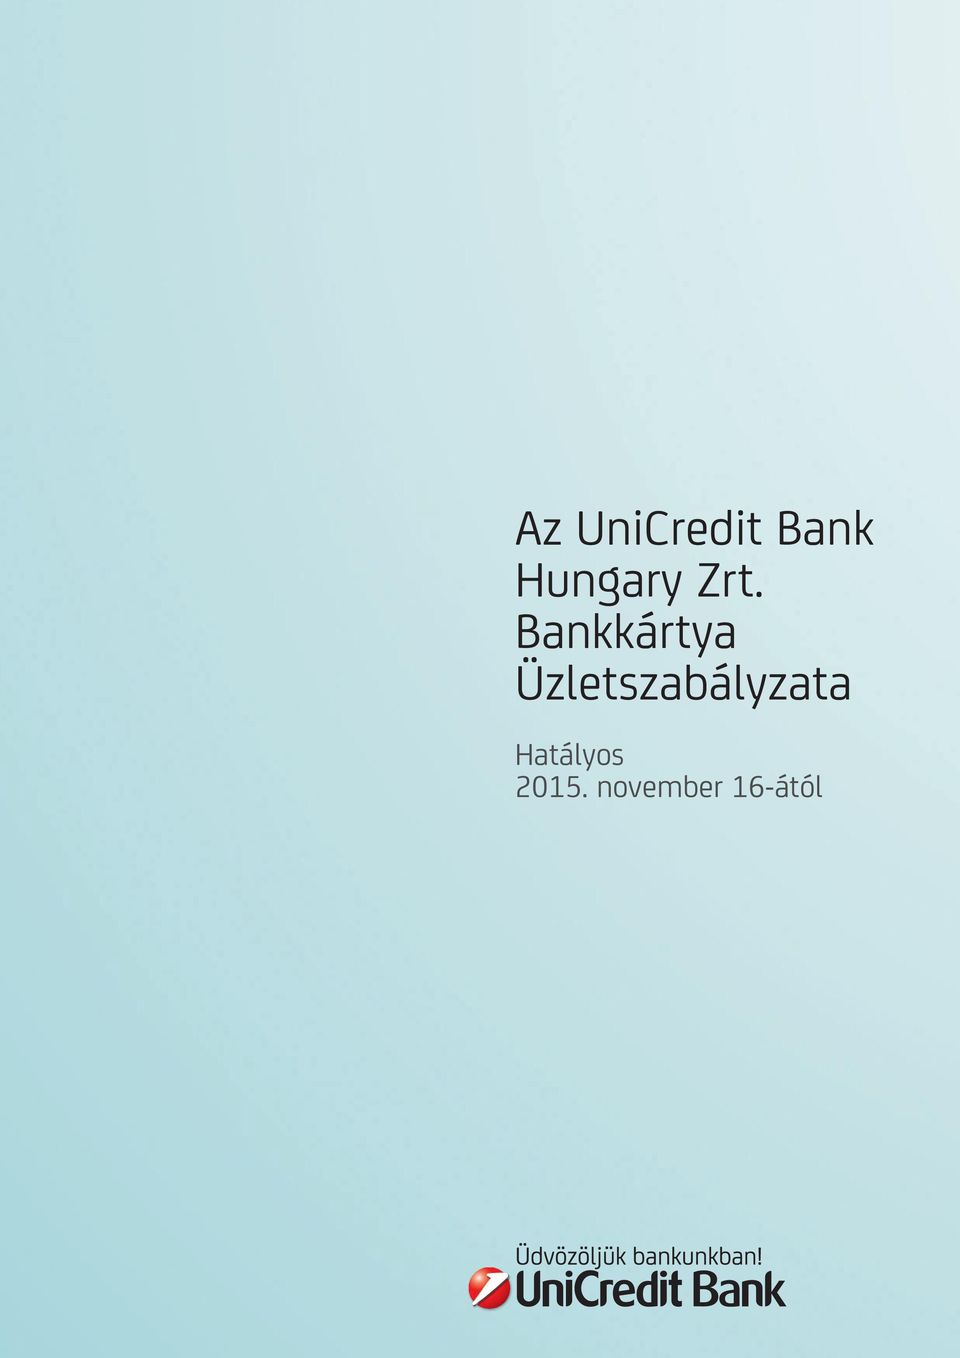 Az UniCredit Bank Hungary Zrt. Bankkártya Üzletszabályzata. Hatályos  november 16-ától - PDF Free Download